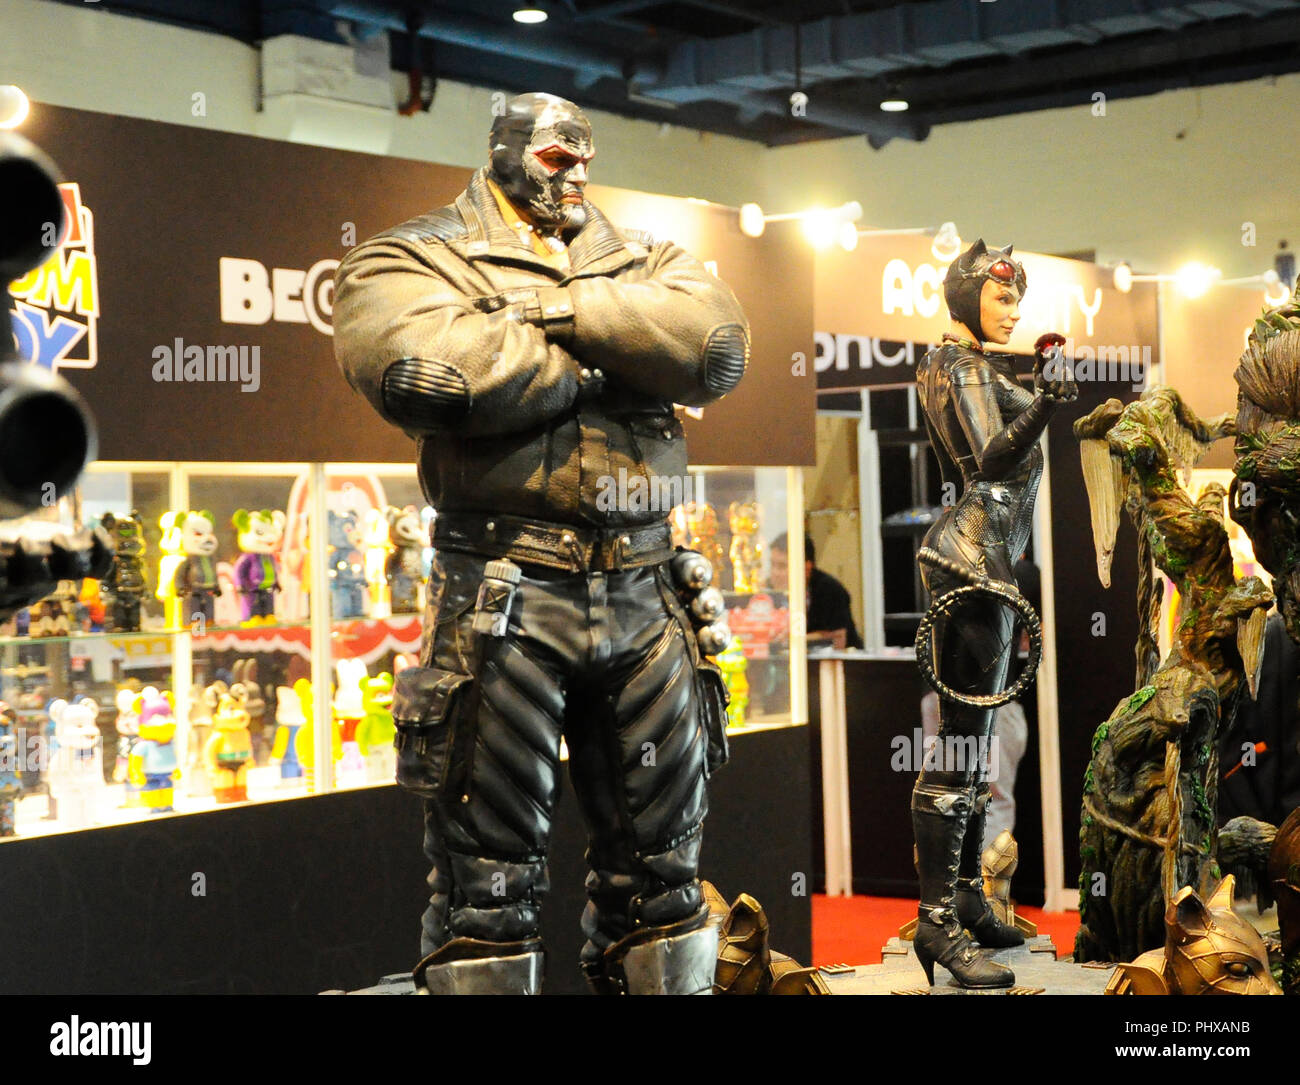 Fiction Super-bösewicht Action Figur Charakter der Fluch von DC Filme und Comics. Bane Action Figur Spielzeug in verschiedenen größe Display für die Öffentlichkeit. Stockfoto